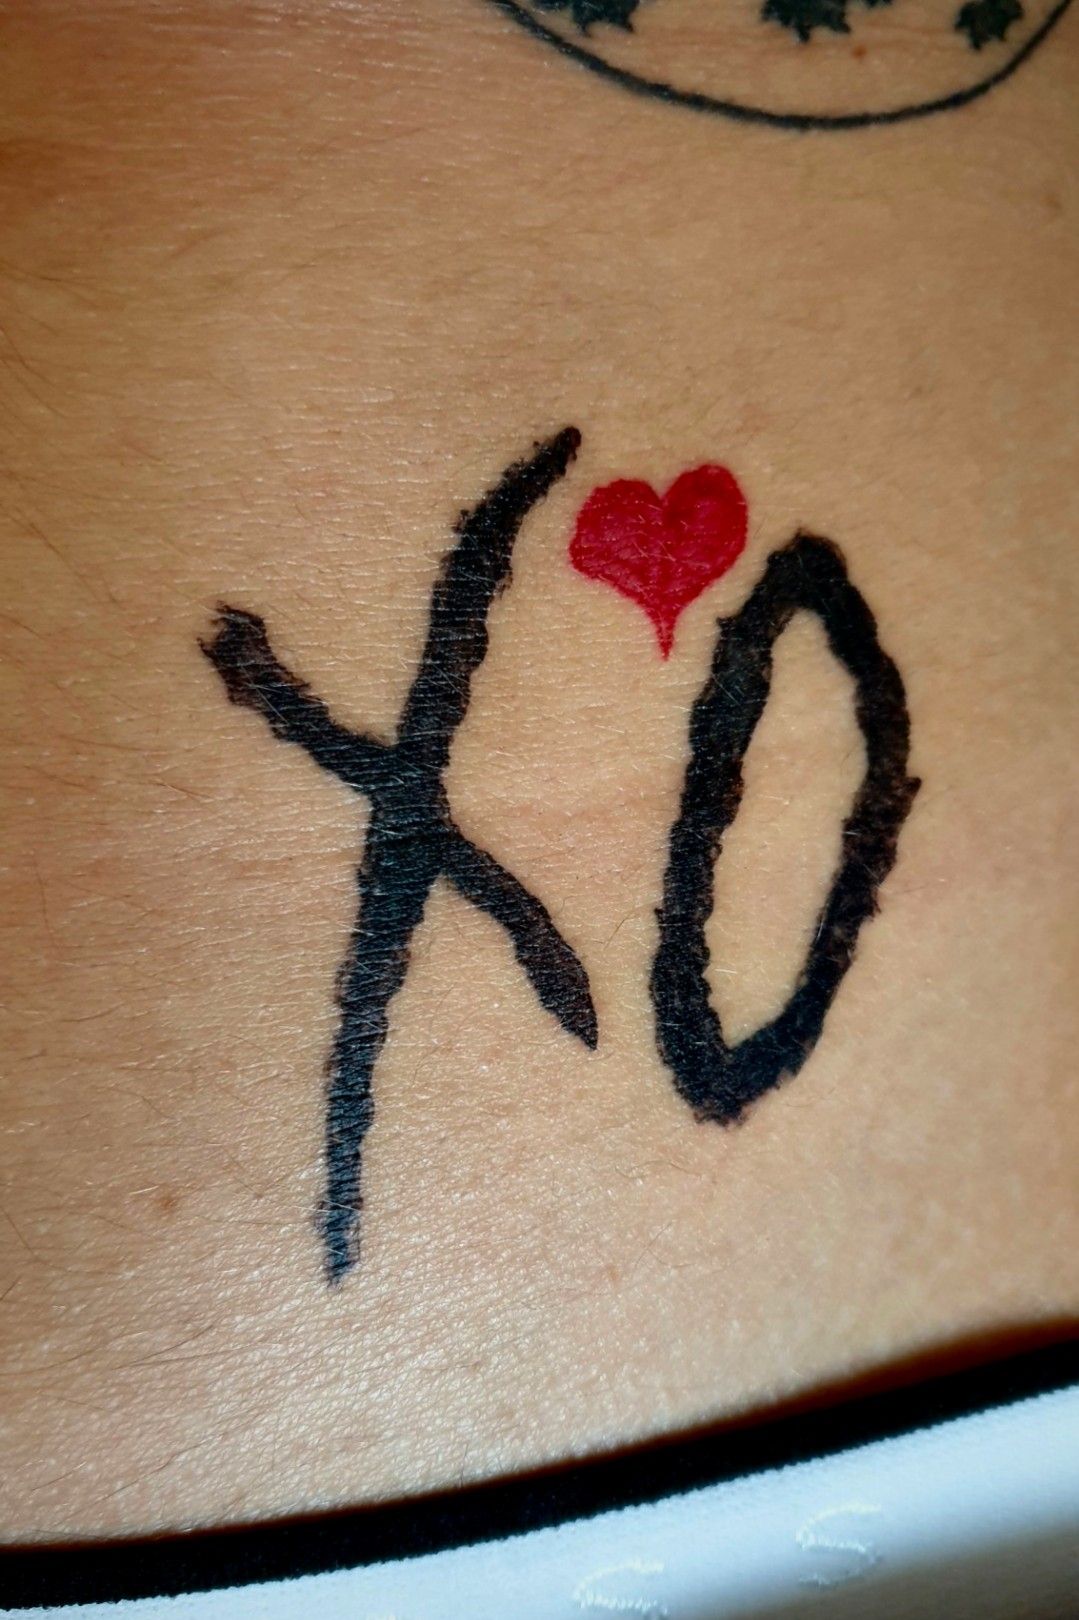 The Weeknd              theweeknd tattoo tattoos  tattoodesign albumart artist tattooartist tattooideas tattooart   Instagram